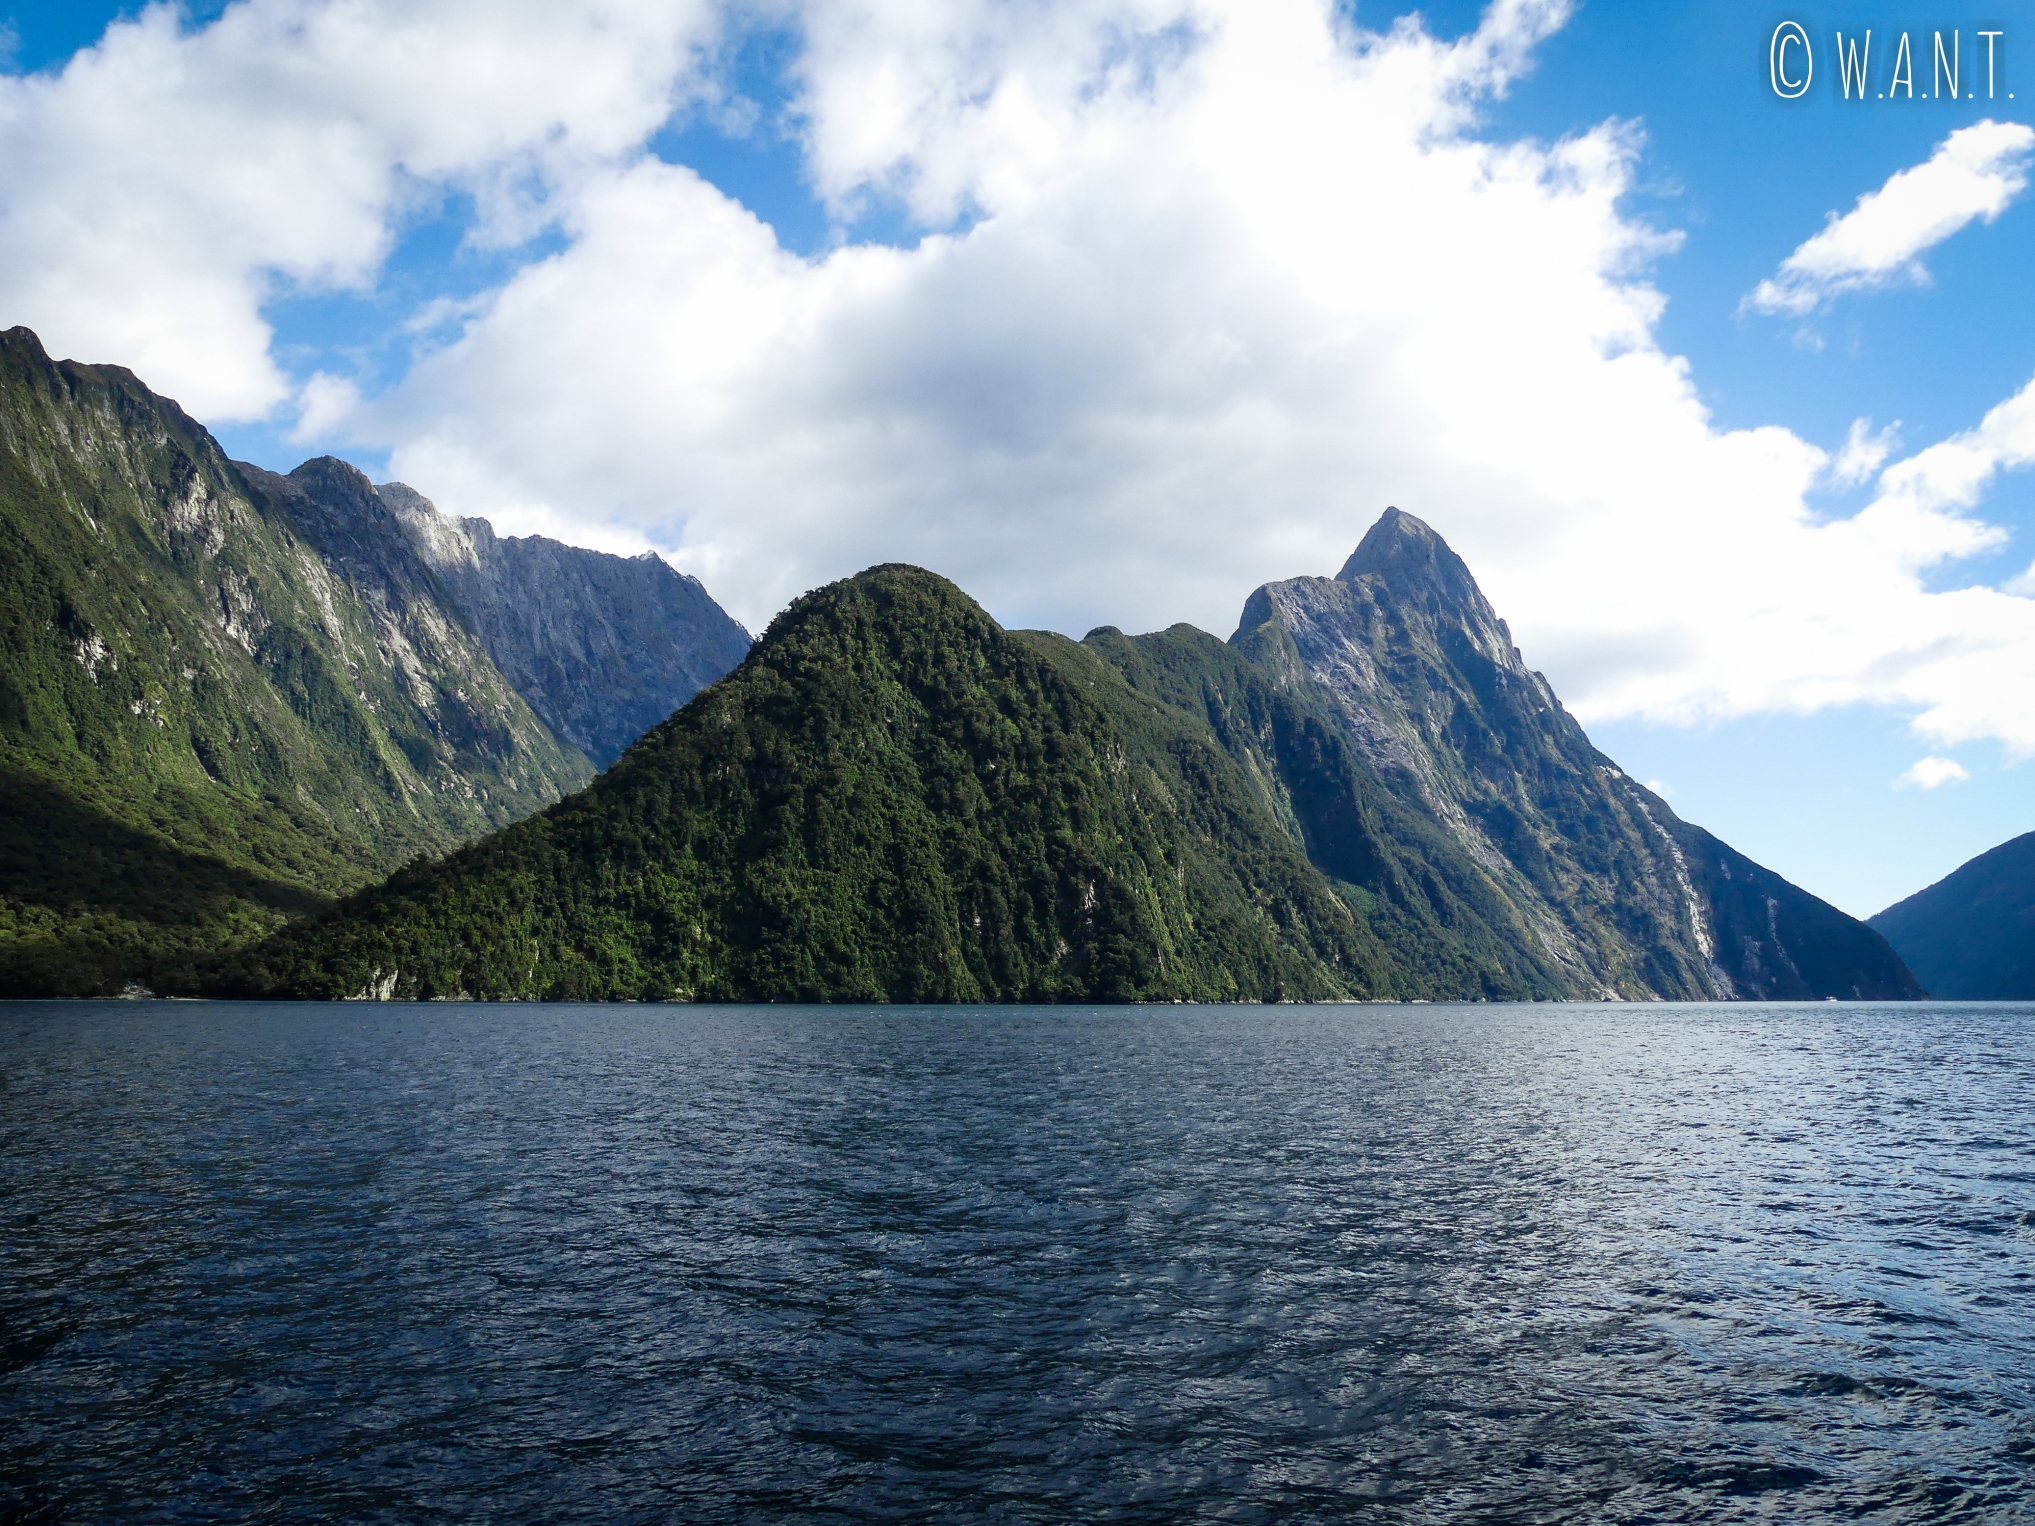 Nous sommes charmés par le paysage du Milford Sound en Nouvelle-Zélande